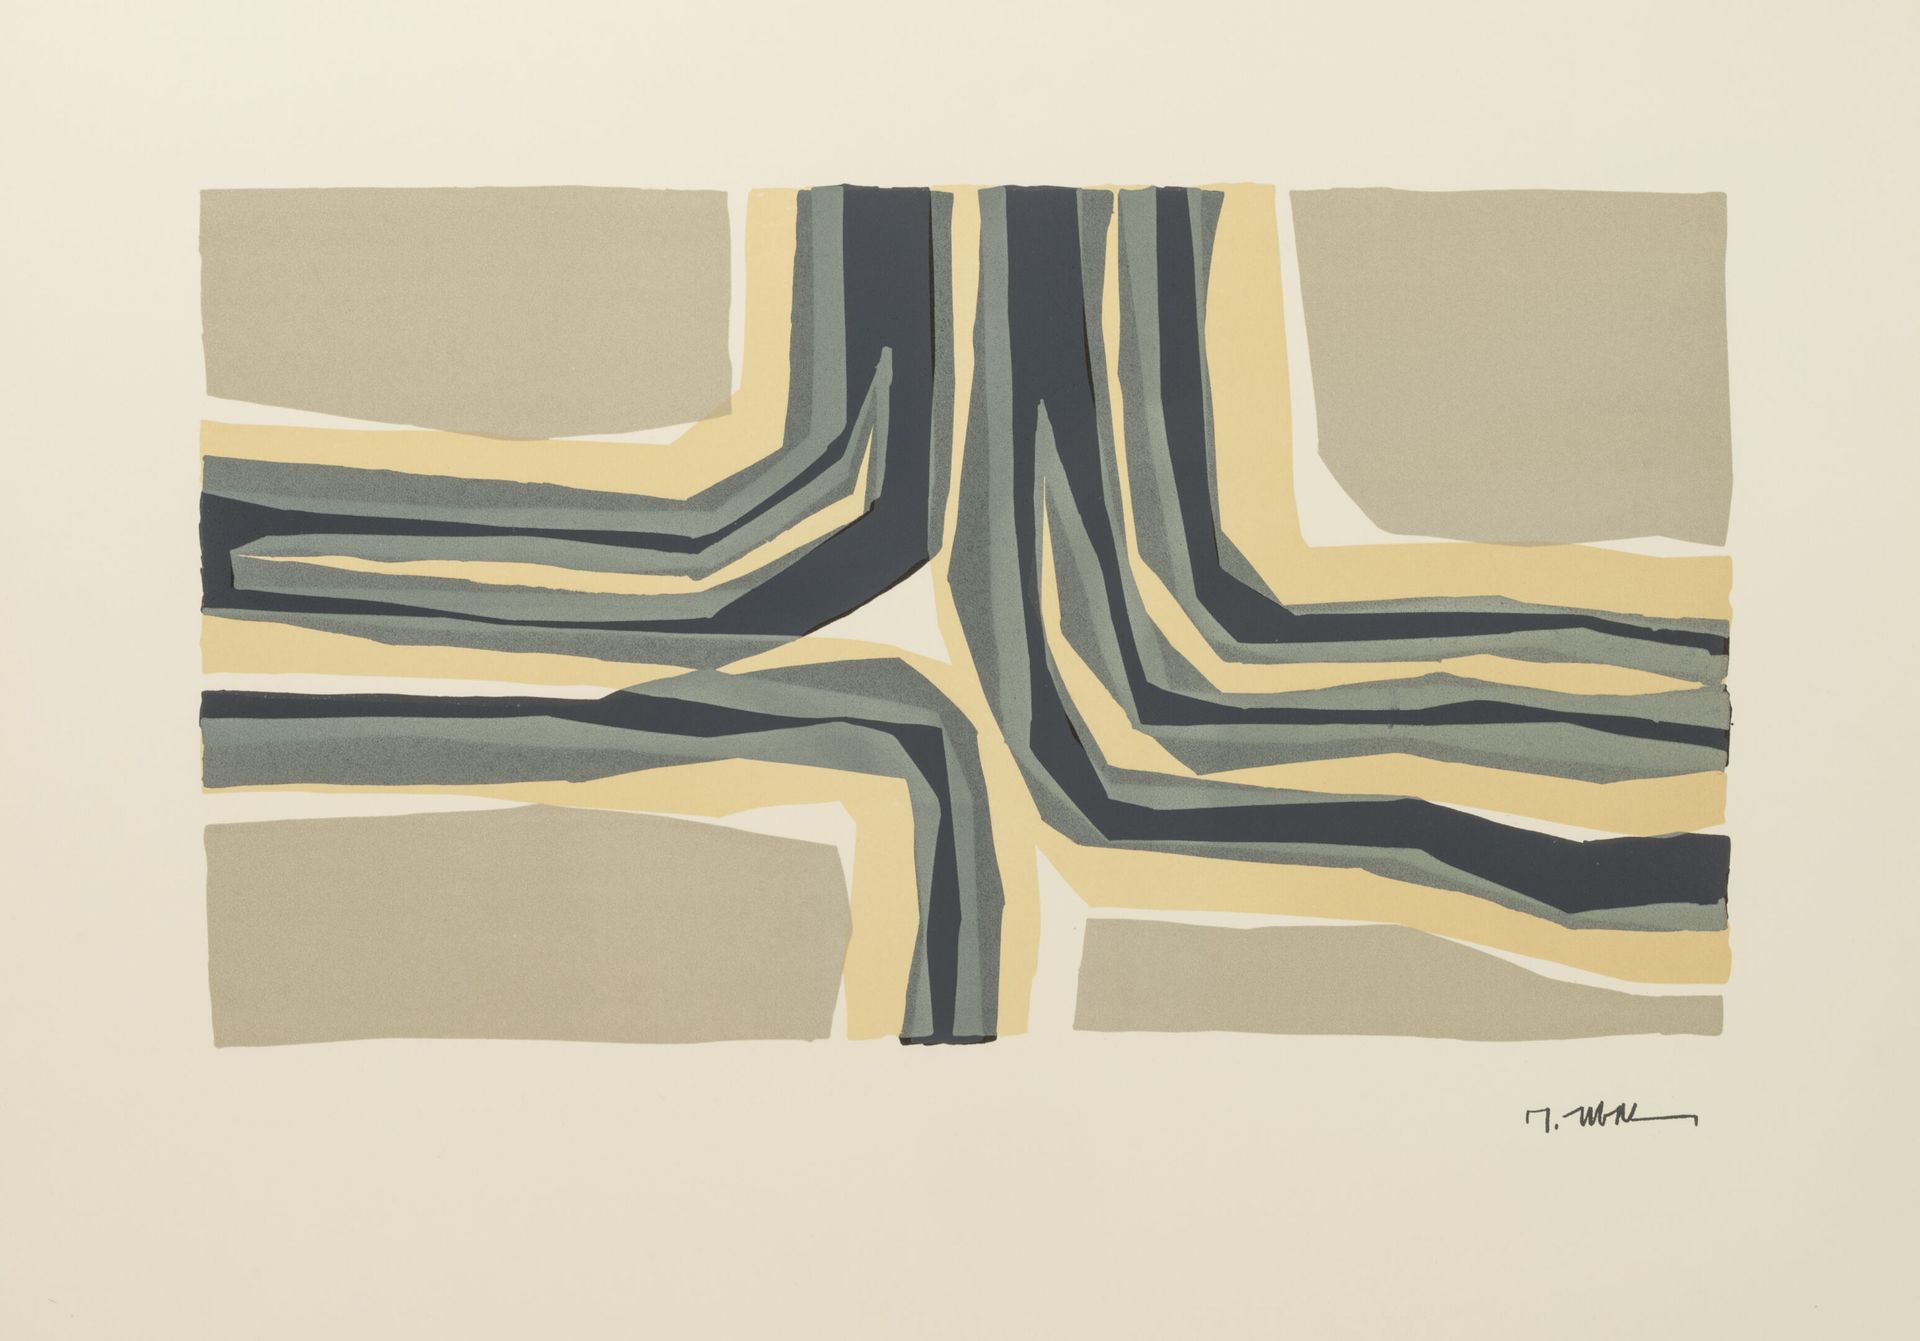 D'après Raoul UBAC (1910-1985) 无题。
纸上彩色石版画。
签名盖在右下方。
47 x 65厘米。
轻微的污渍和褶皱。